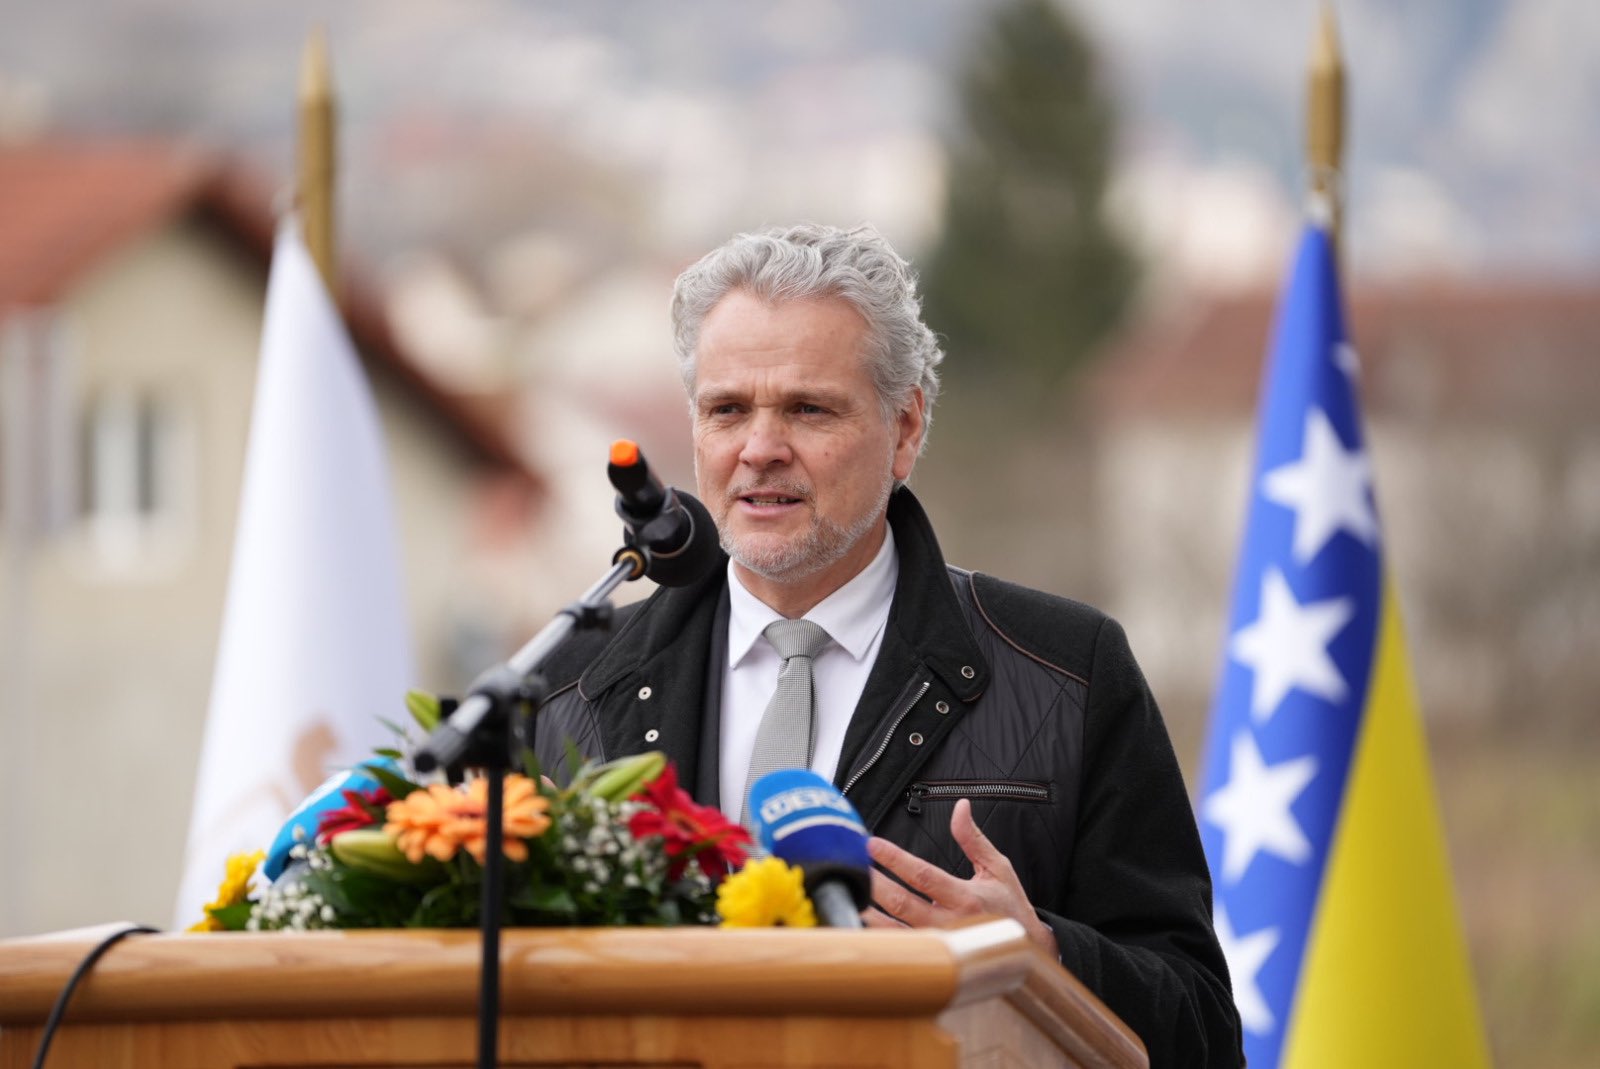 Delegacija EU u BiH pozdravila 'davno zakašnjelo usvajanje budžeta'